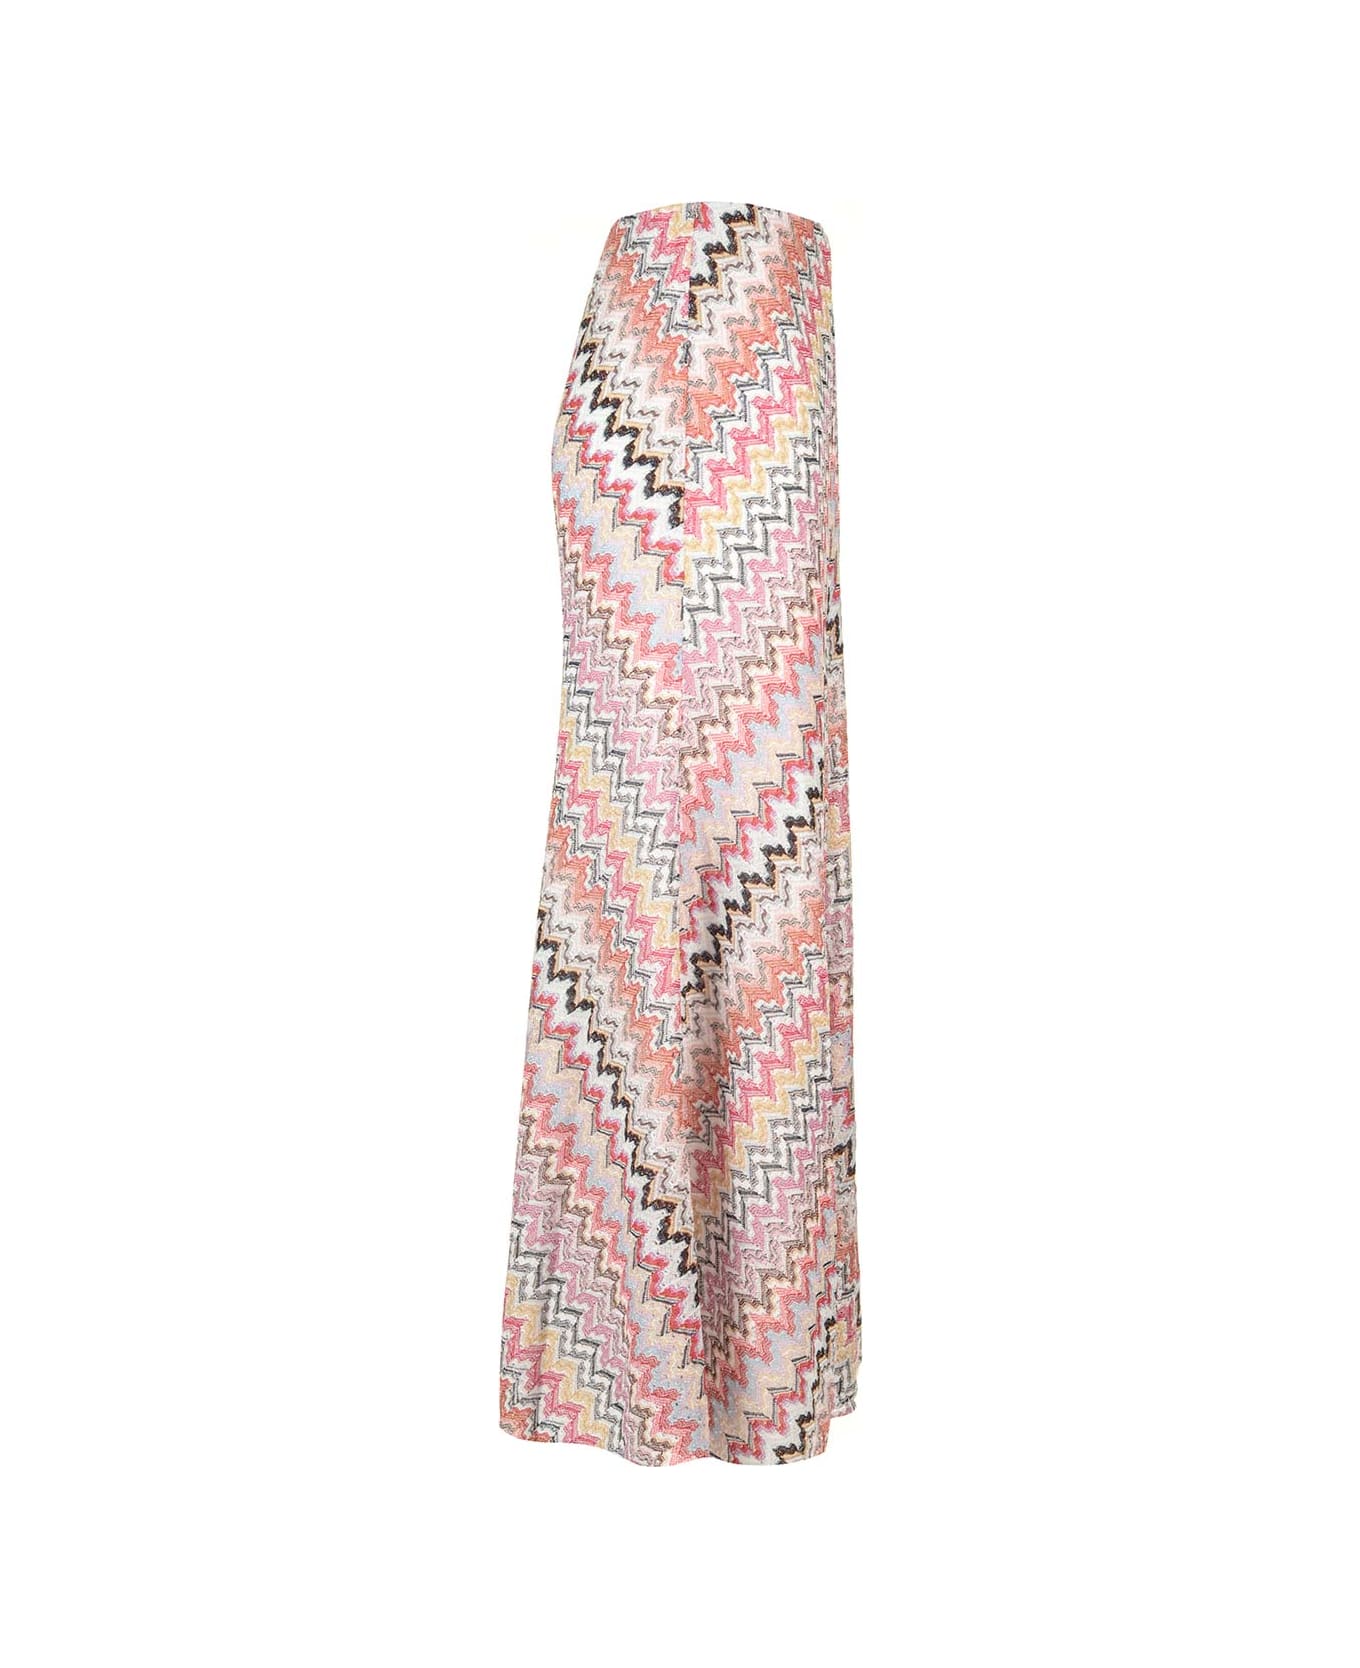 Missoni Viscose Knit Maxi Skirt - Pink/white スカート